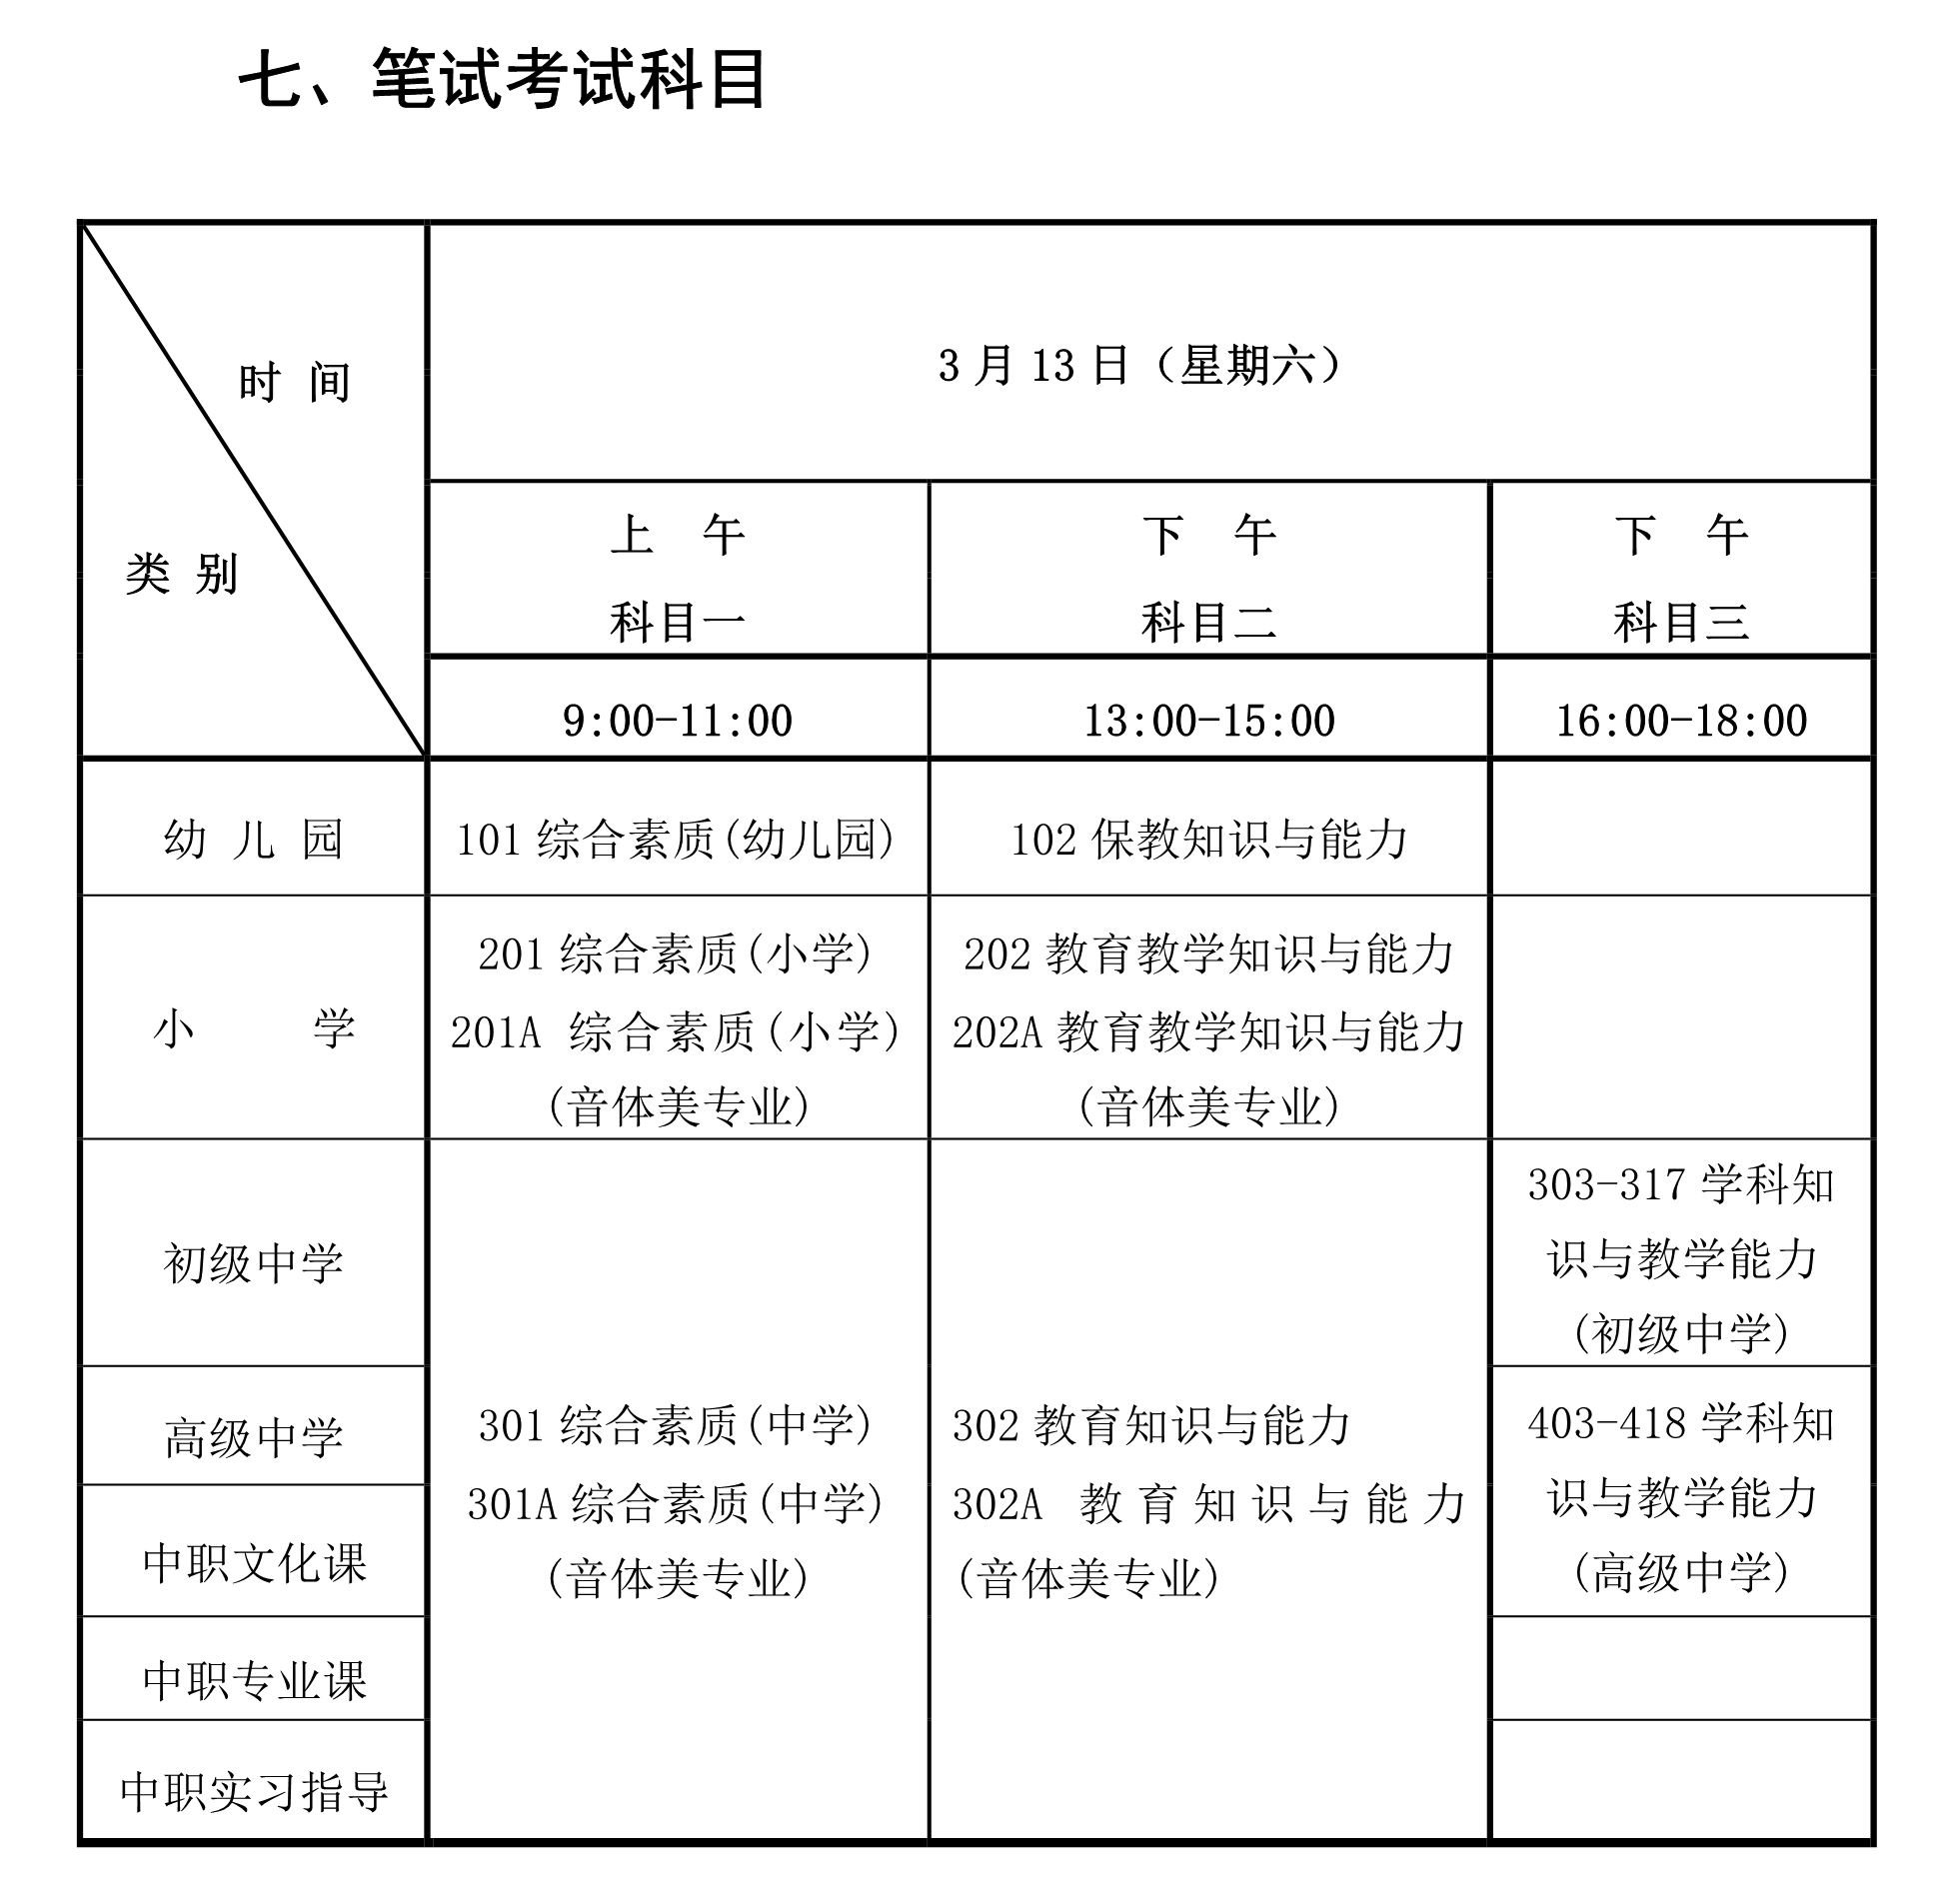 海南省2021年上教师资格考试笔试公告